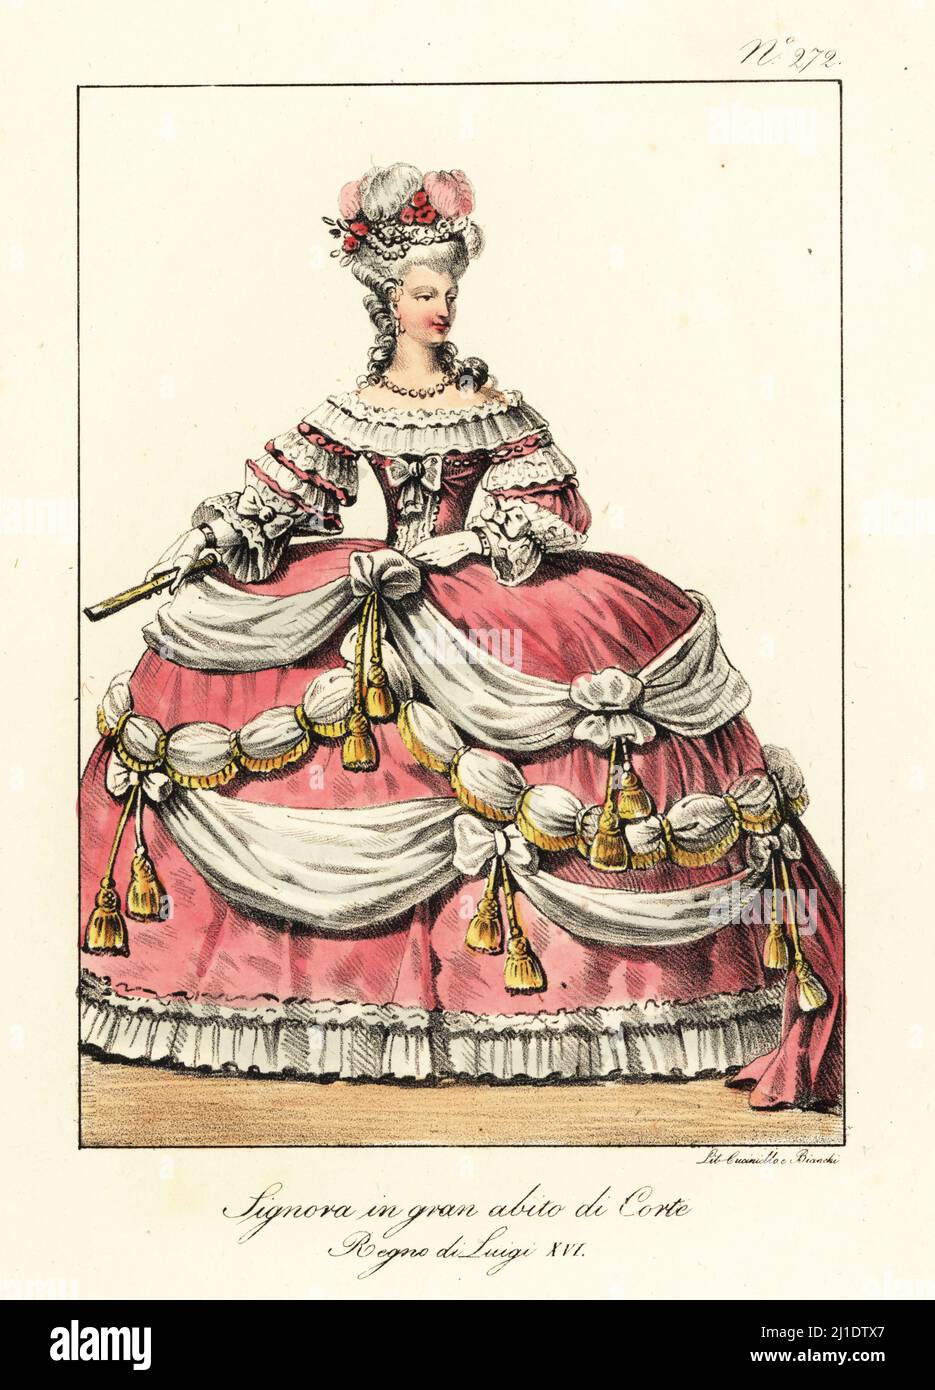 Nobile francese in abito formale alla corte di re Luigi XVI Siepi in  plumato, gonna a pantalone decorata con fronzoli, ceneri e nappine d'oro.  Dame en Grand Habit de Cour. Regne de